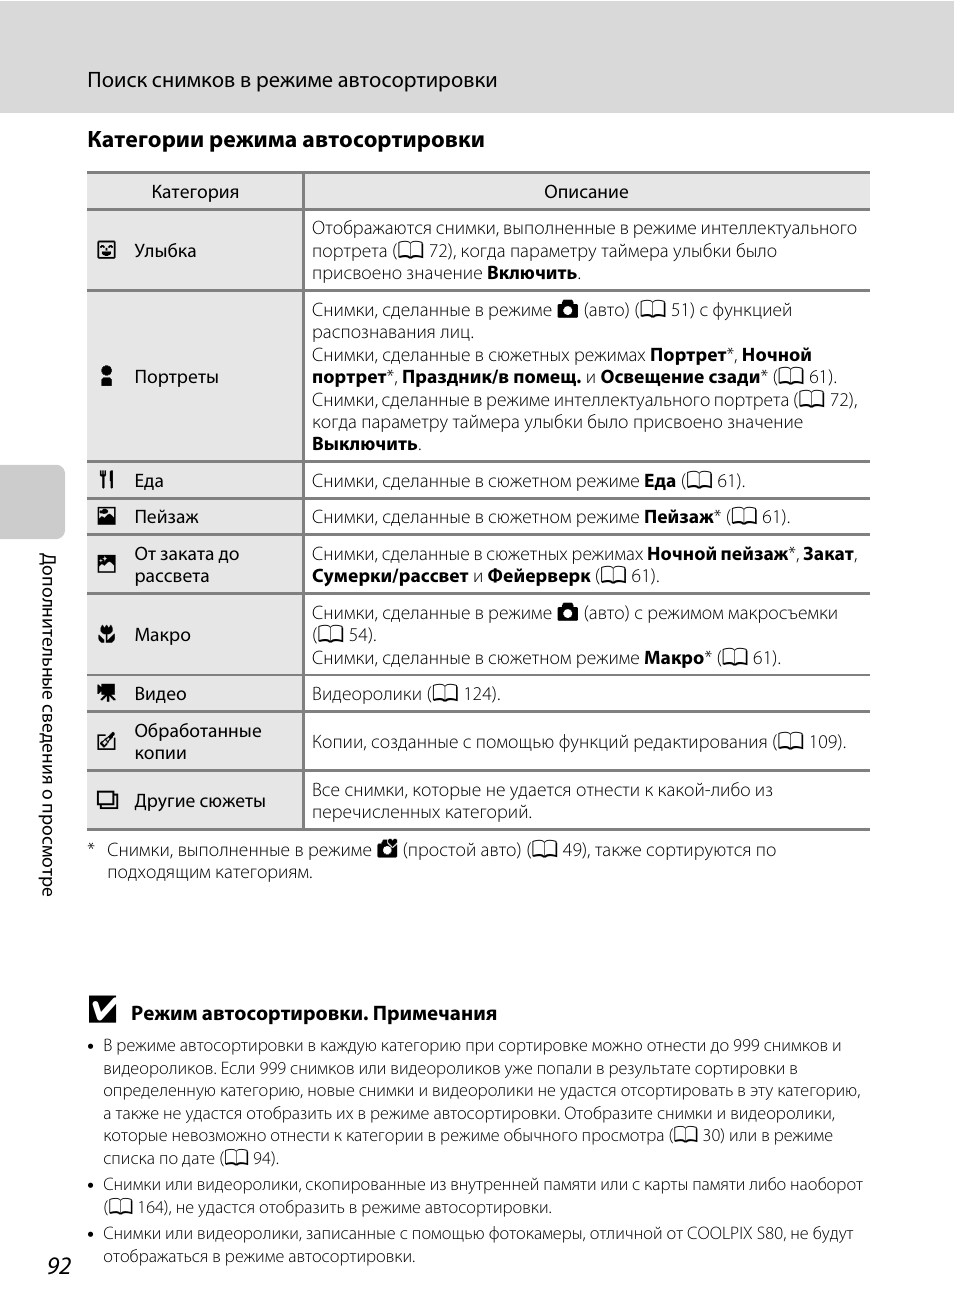 Категории режима автосортировки, A 92) | Инструкция по эксплуатации Nikon Coolpix S80 | Страница 104 / 204